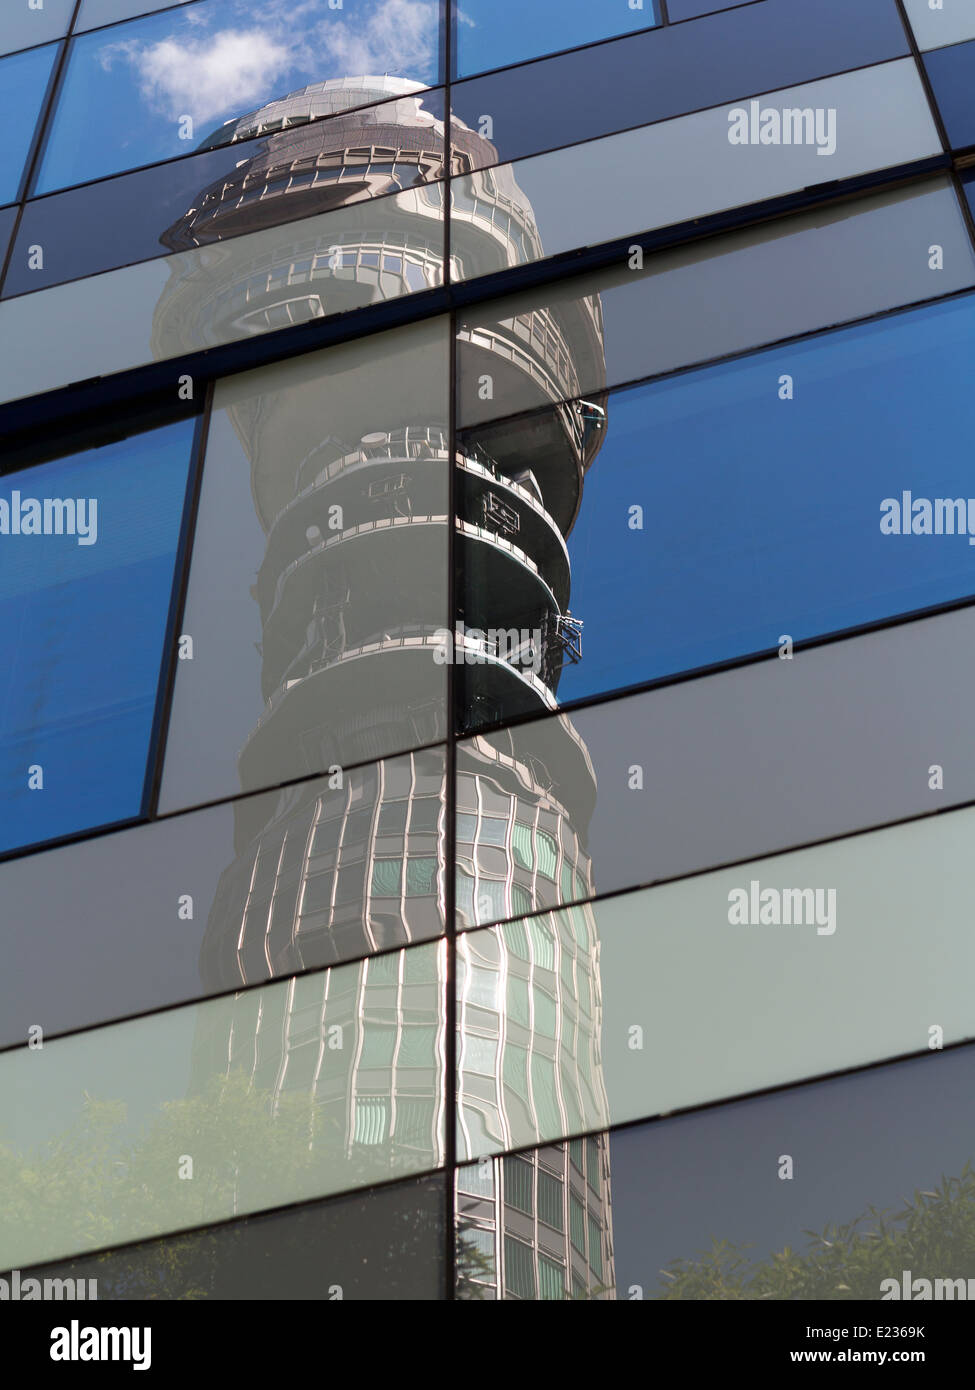 Telekom-Turm vor blauem Himmel mit weißen Wolken und Bäume. Im Fenster Spiegelungen auf kubistische Weise verzerrt Stockfoto